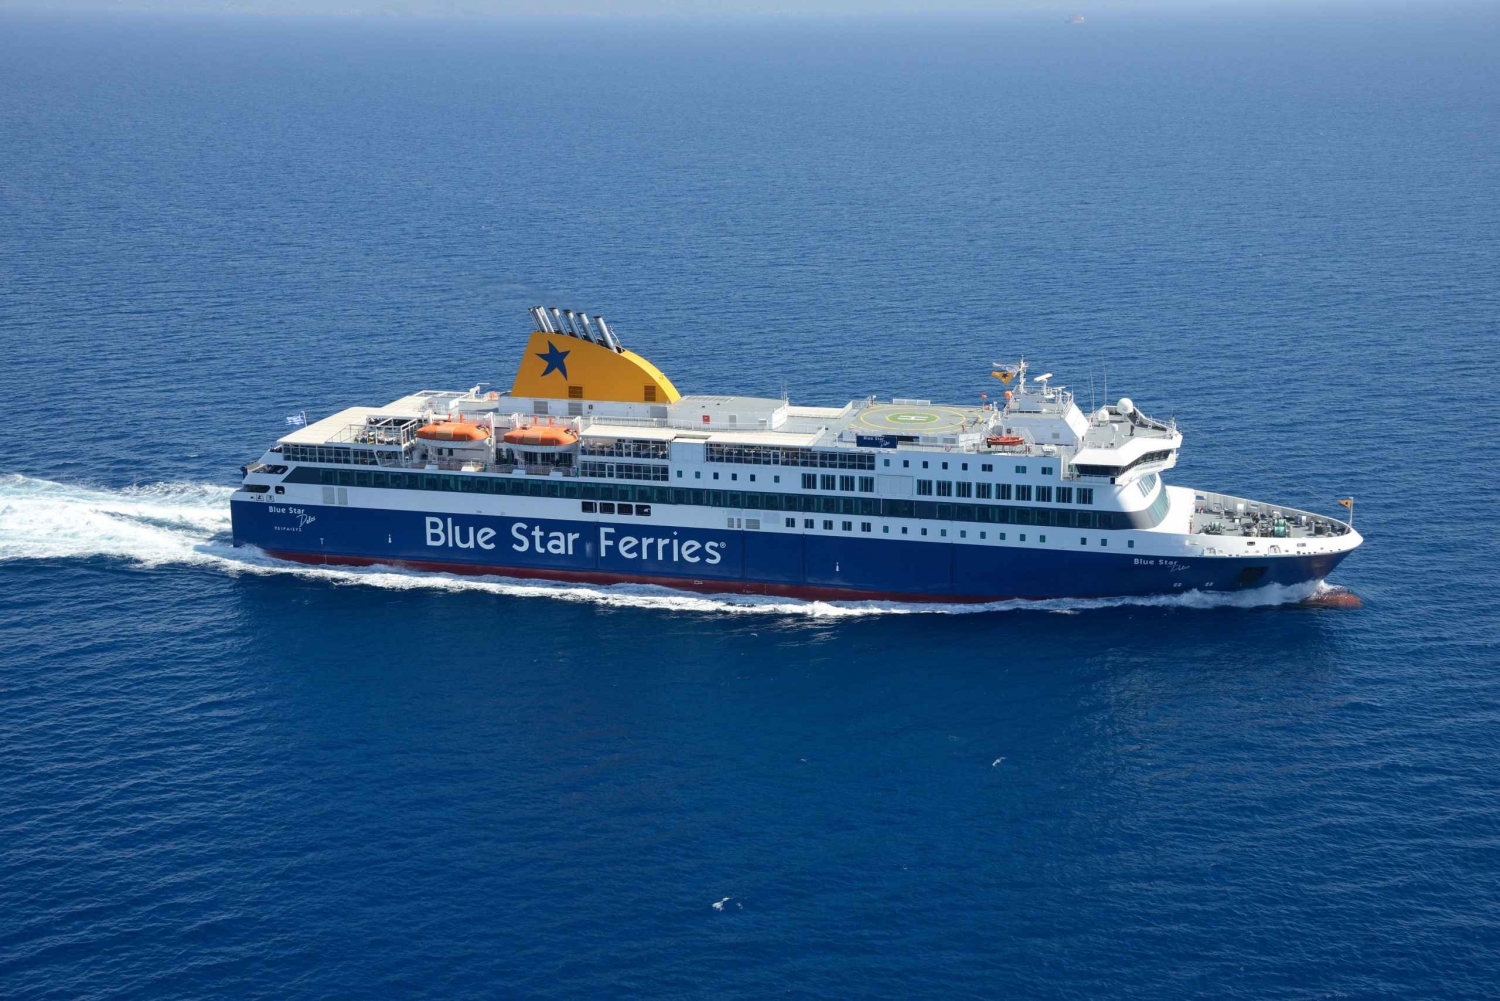 Paros Island/Athen Piræus: 1-Way Transfer færgebilletter